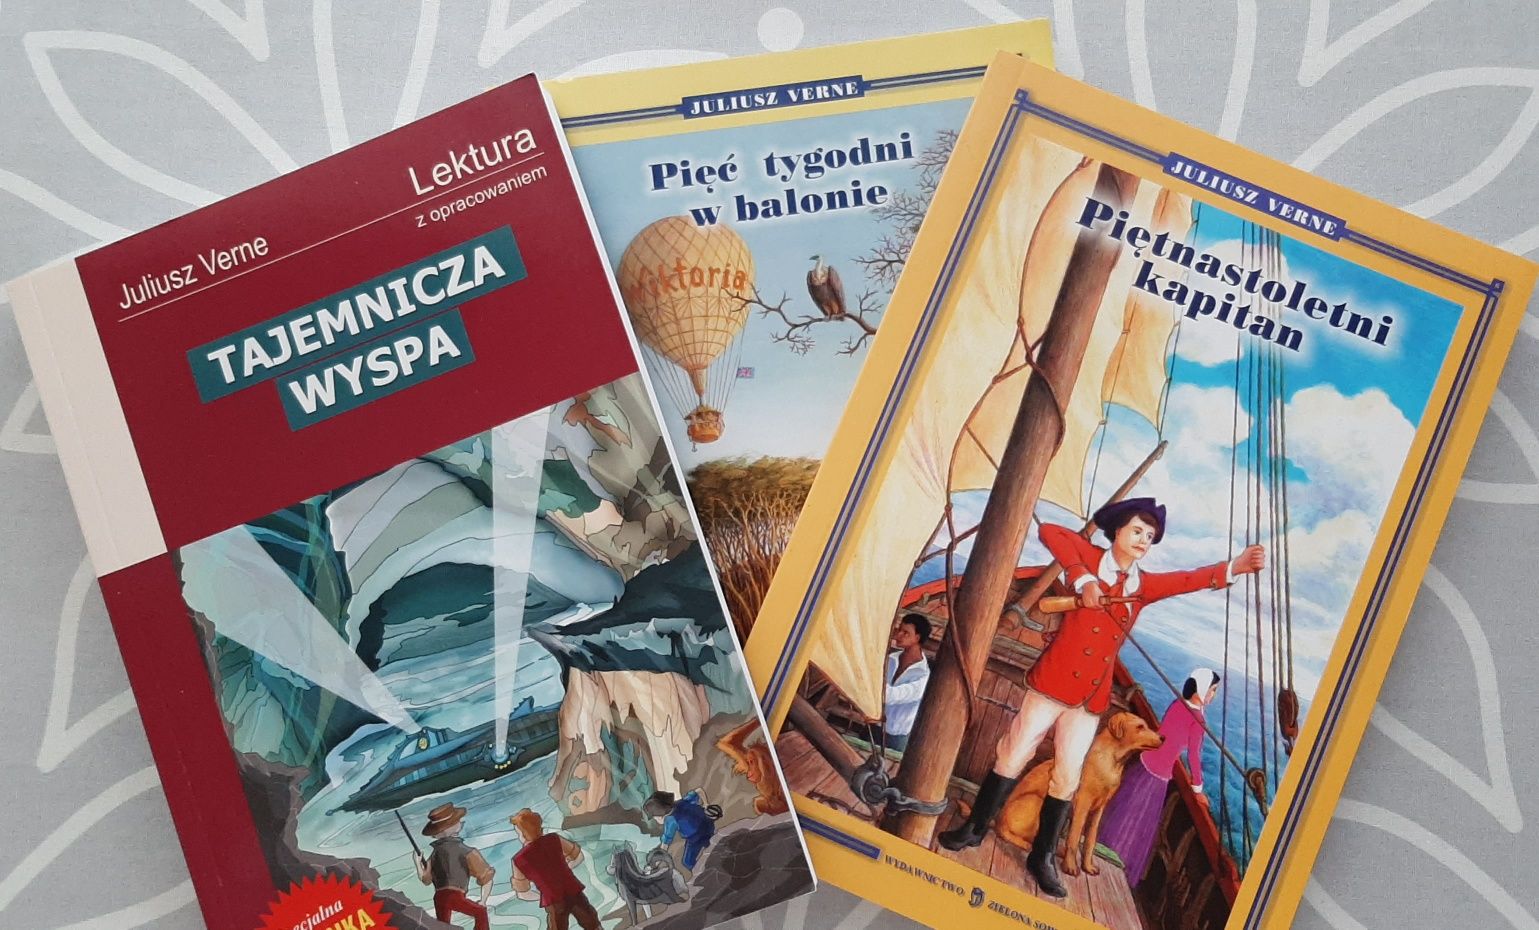 Juliusz Verne 3 książki  dla fana przygód m.in. Tajemnicza wyspa